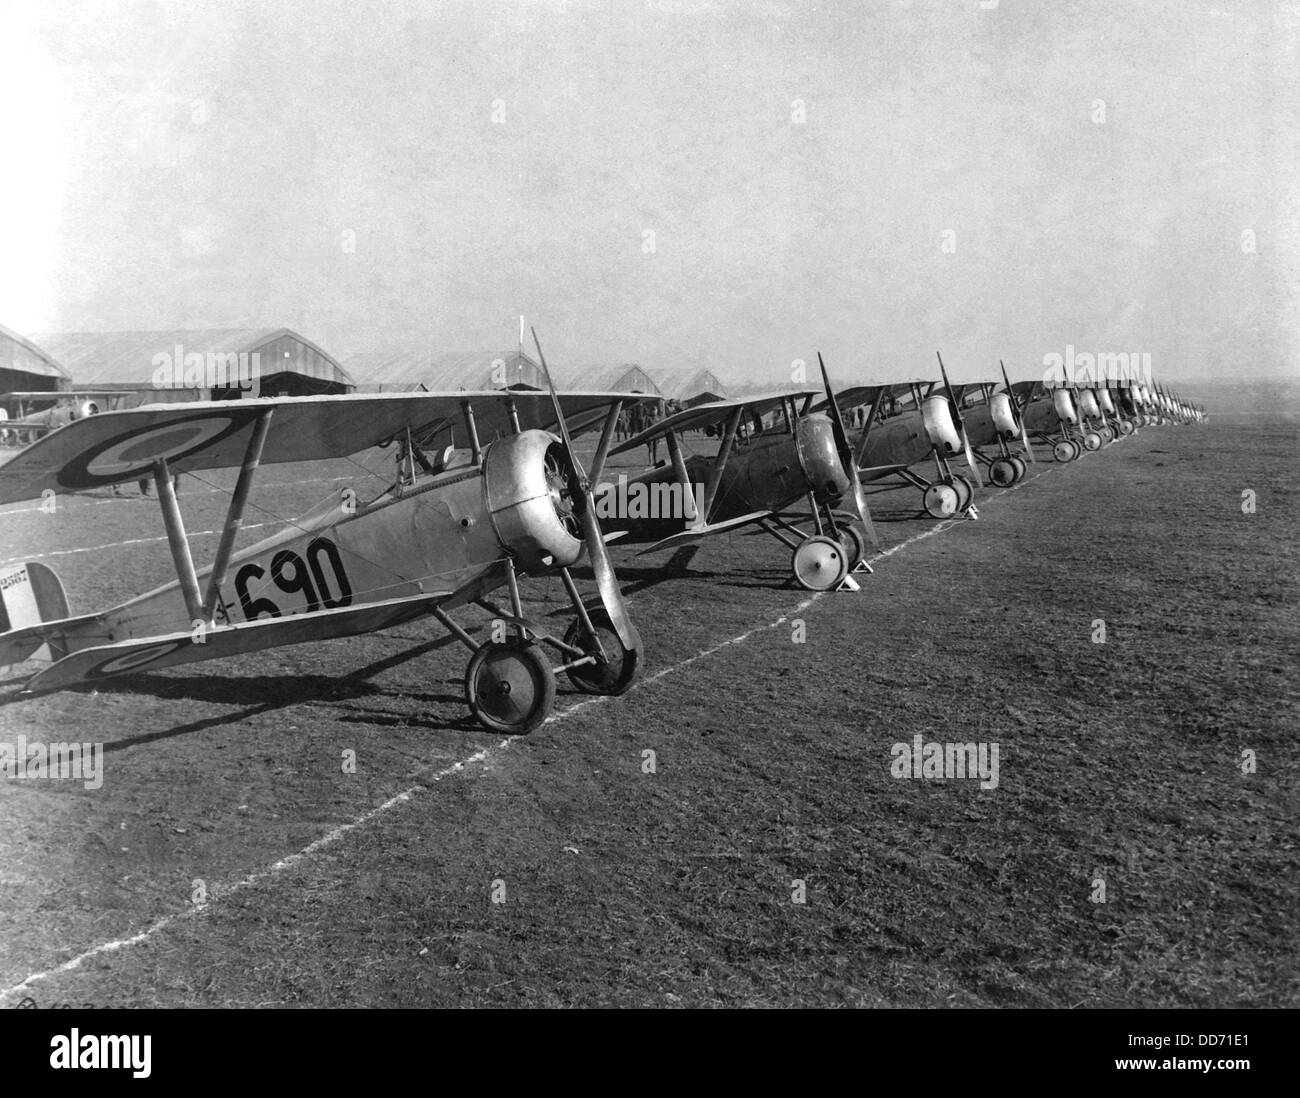 Britische "Nieuport 12" Flugzeuge waren zweisitzige Aufklärungsflugzeug. Issoudon, Frankreich. Weltkrieg April 1918. Stockfoto